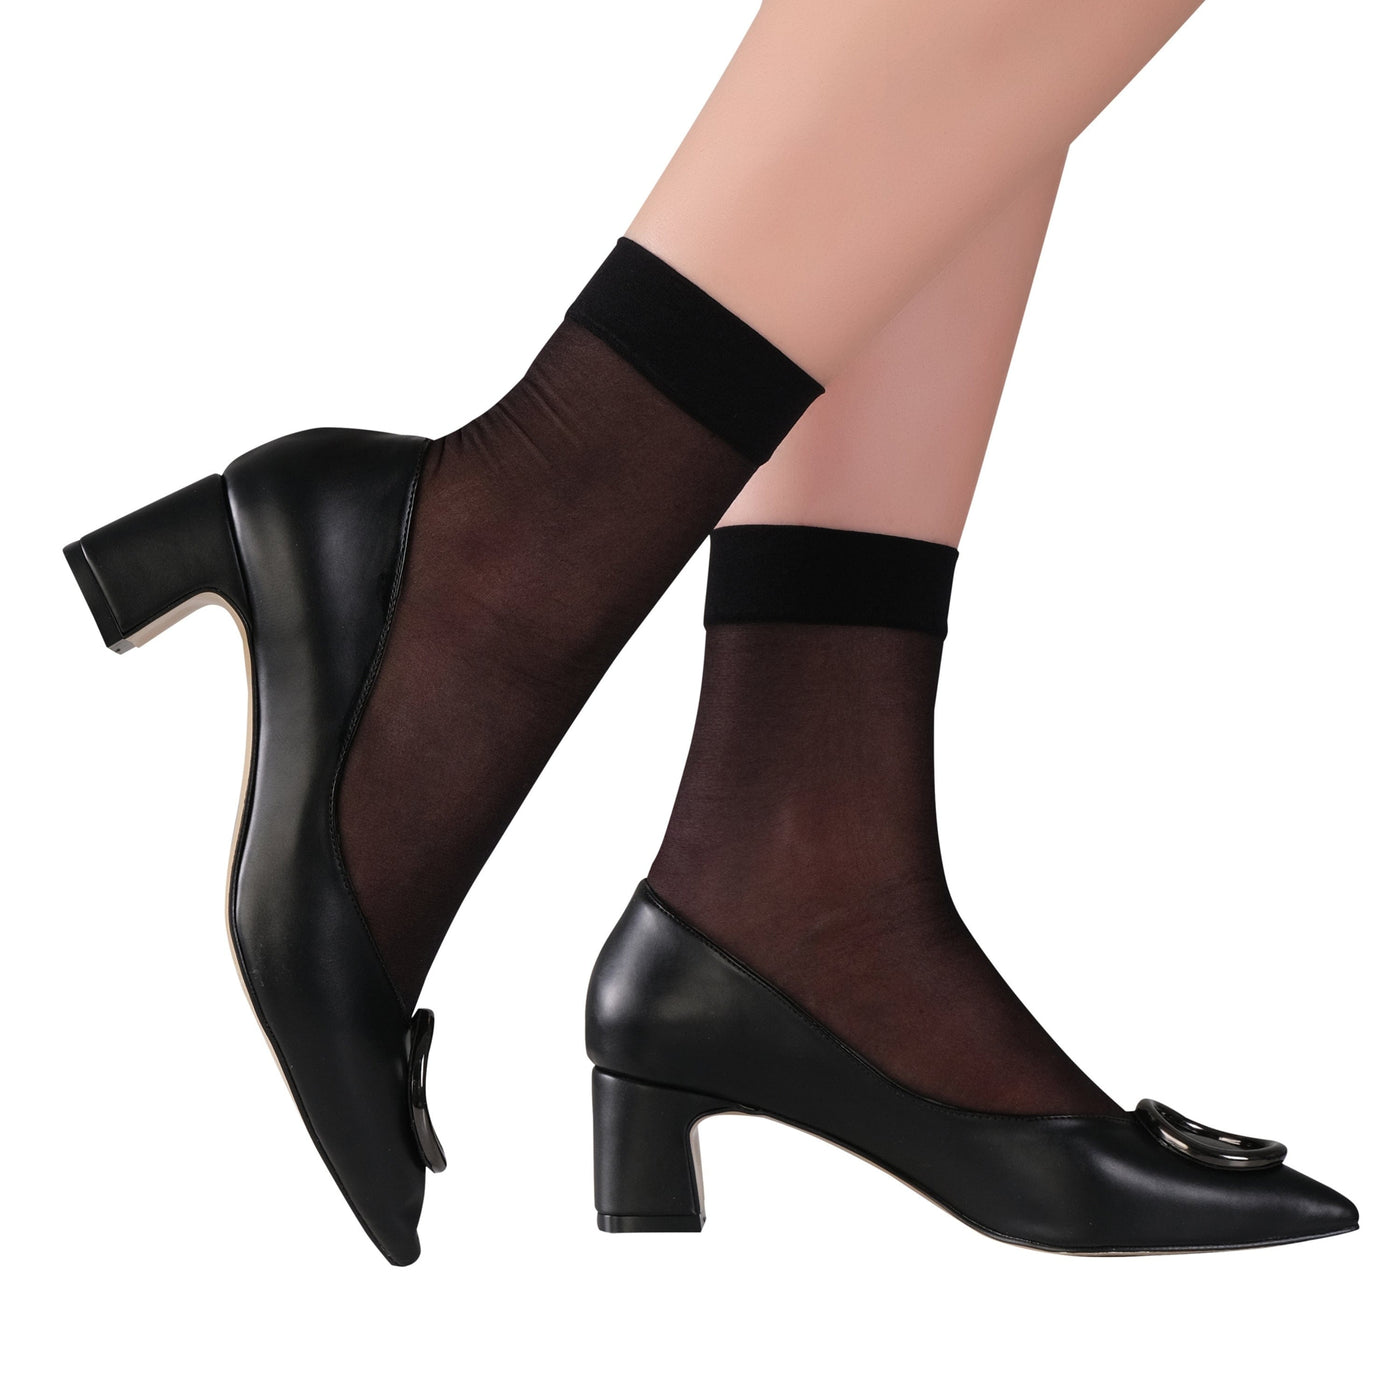 ELYFER Stylish Ankle High Nylon Sheer Socks  for Women #color_black